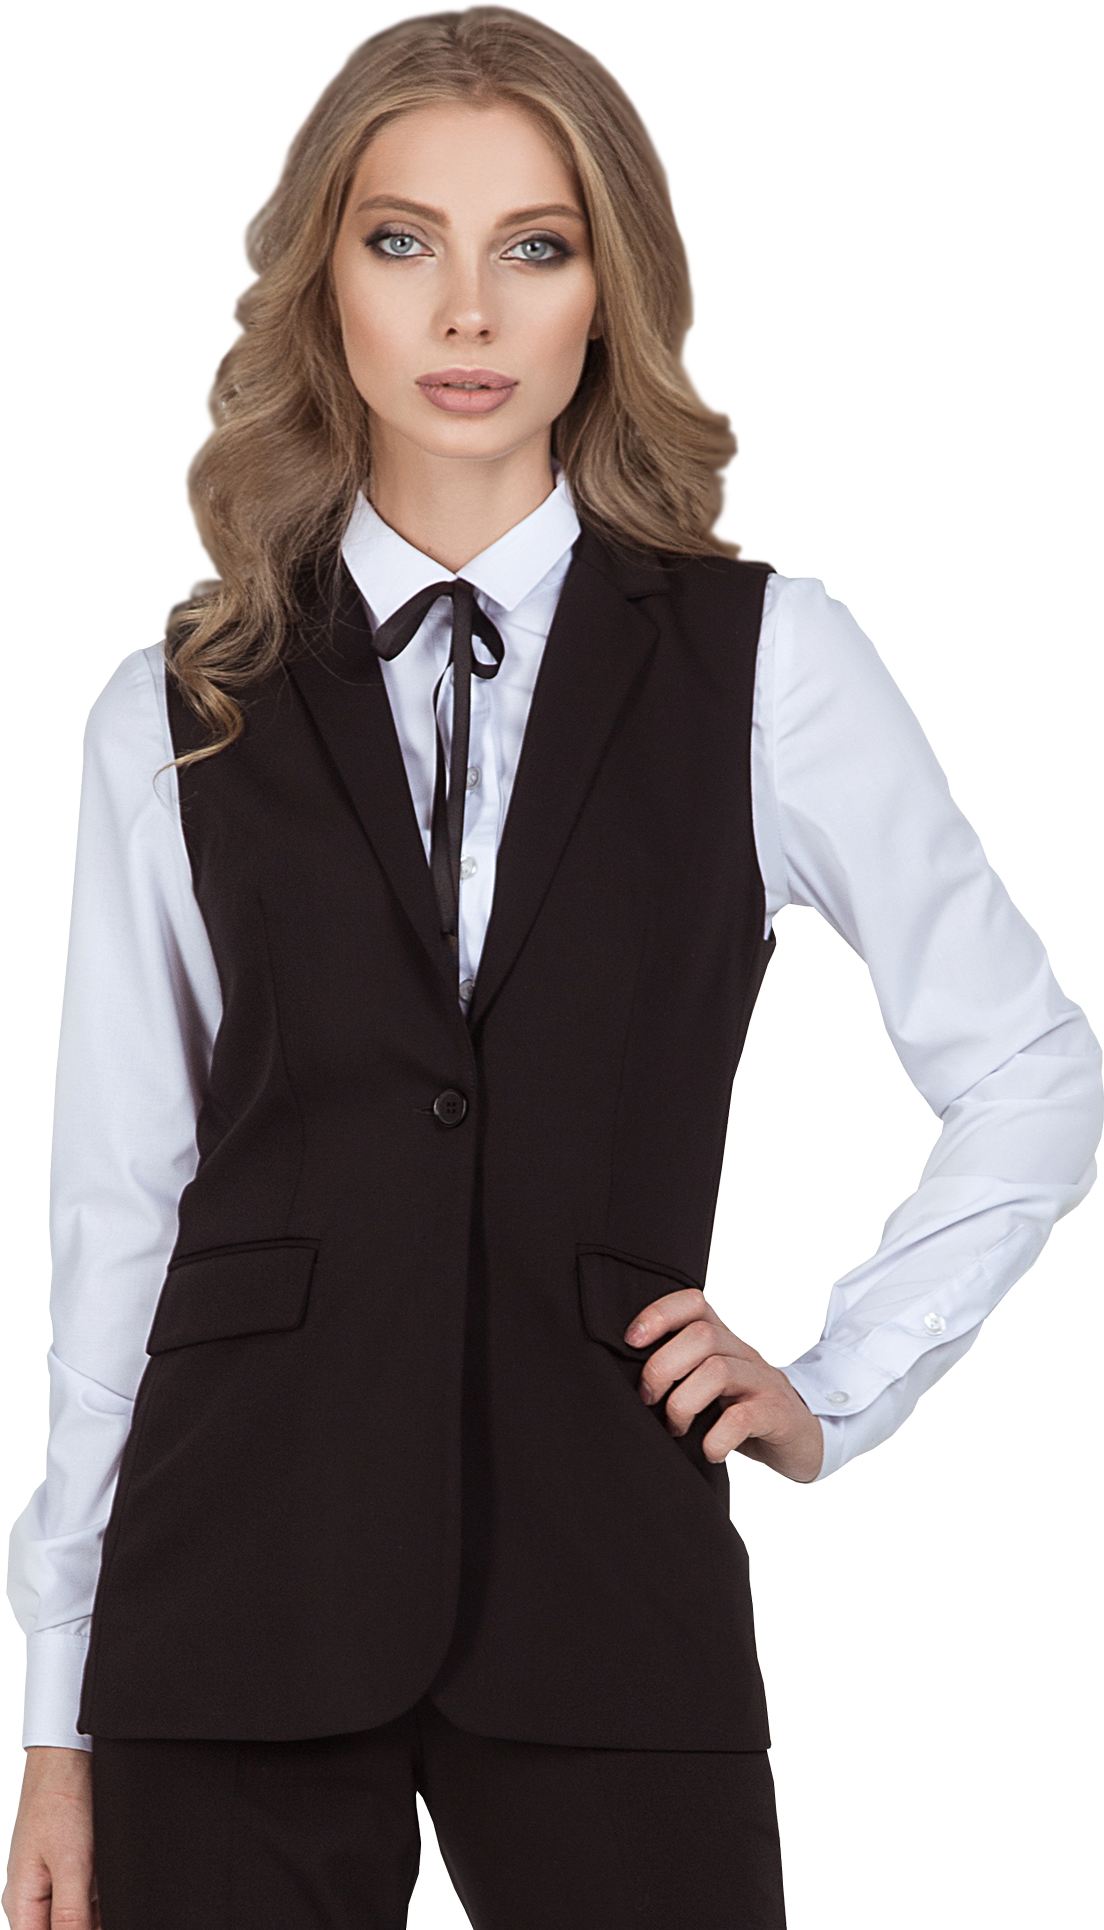 Комплект для администратора VISHERA - удлиненная жилетка / брюки, женский.  1